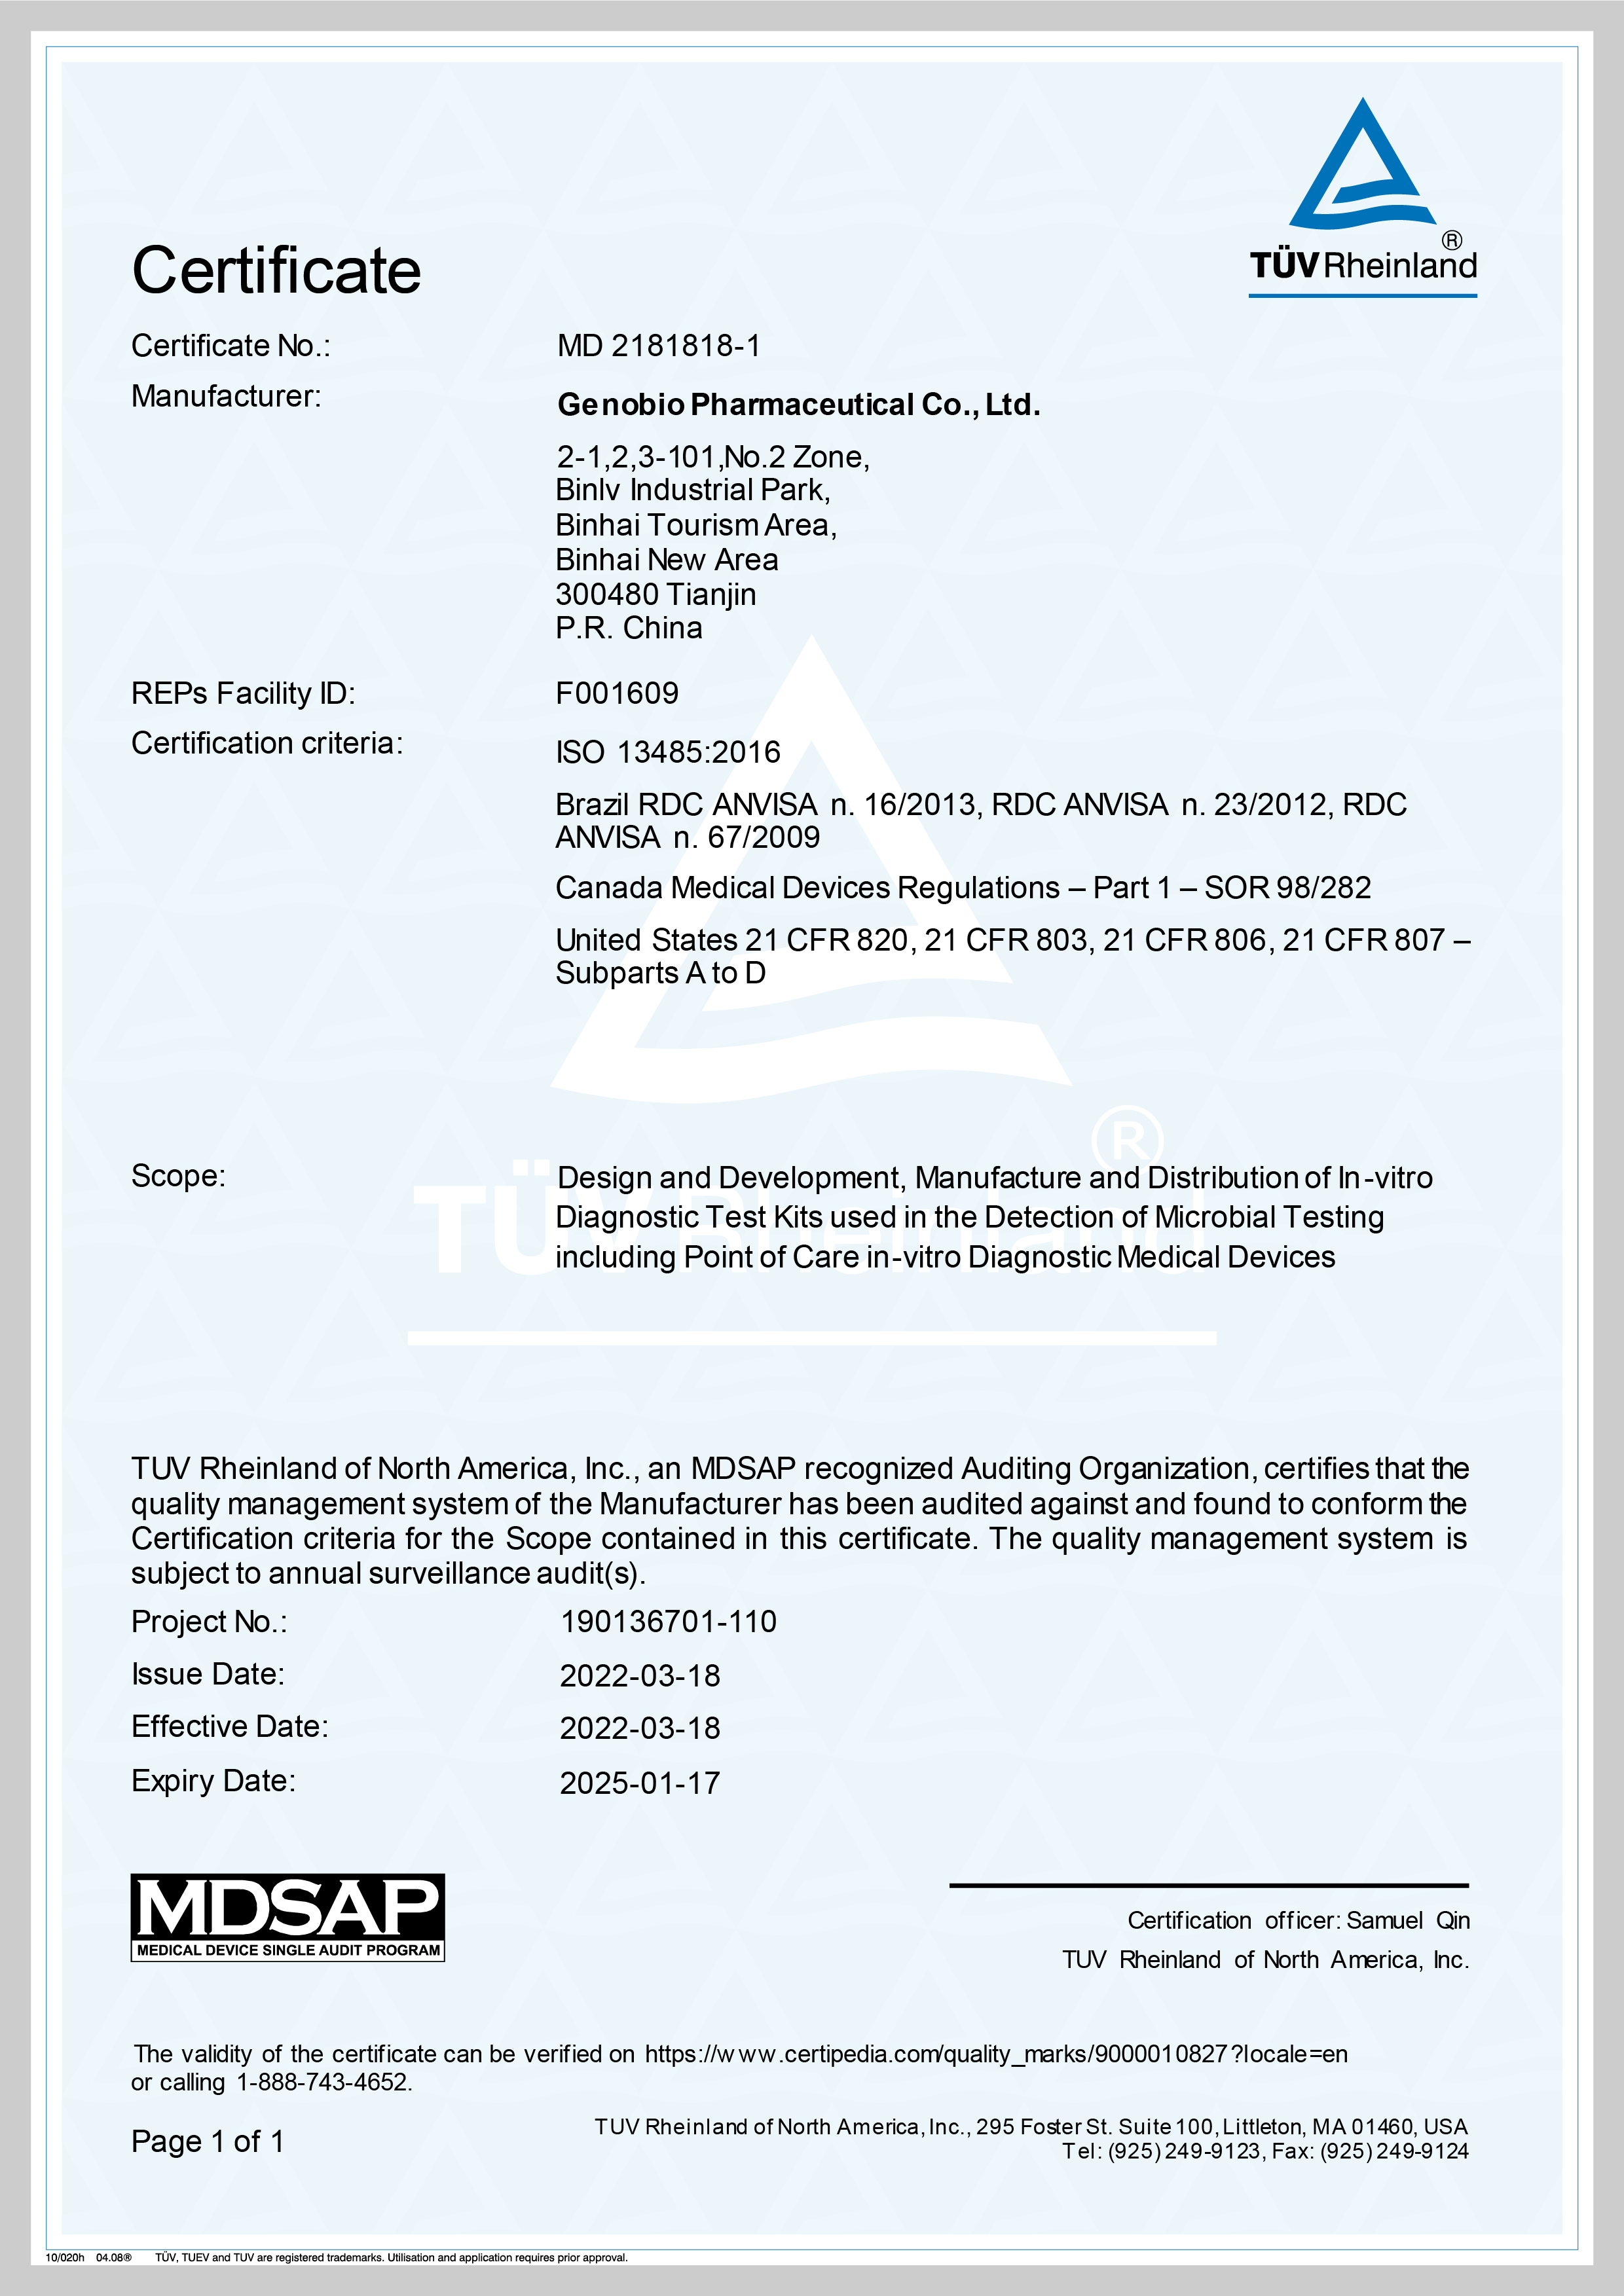 Genobio prima certifikat MDSAP - - najviši regulatorni standard u industriji proizvodnje medicinskih proizvoda